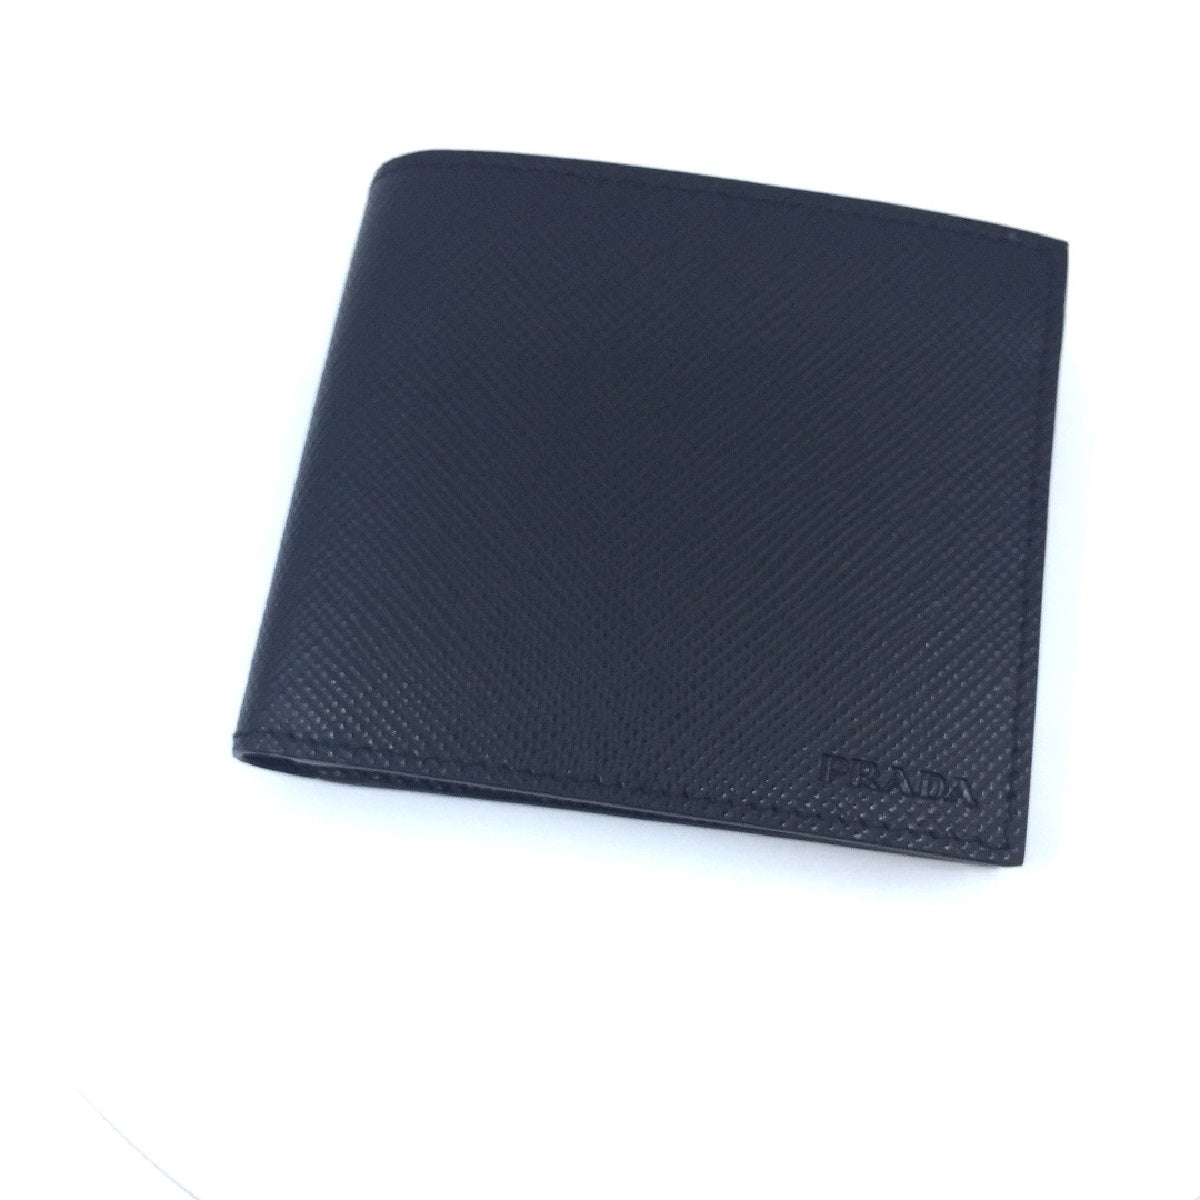 Prada Mens Nero Black Saffiano Leather Billfold Bifold Wallet - LUXURYMRKT